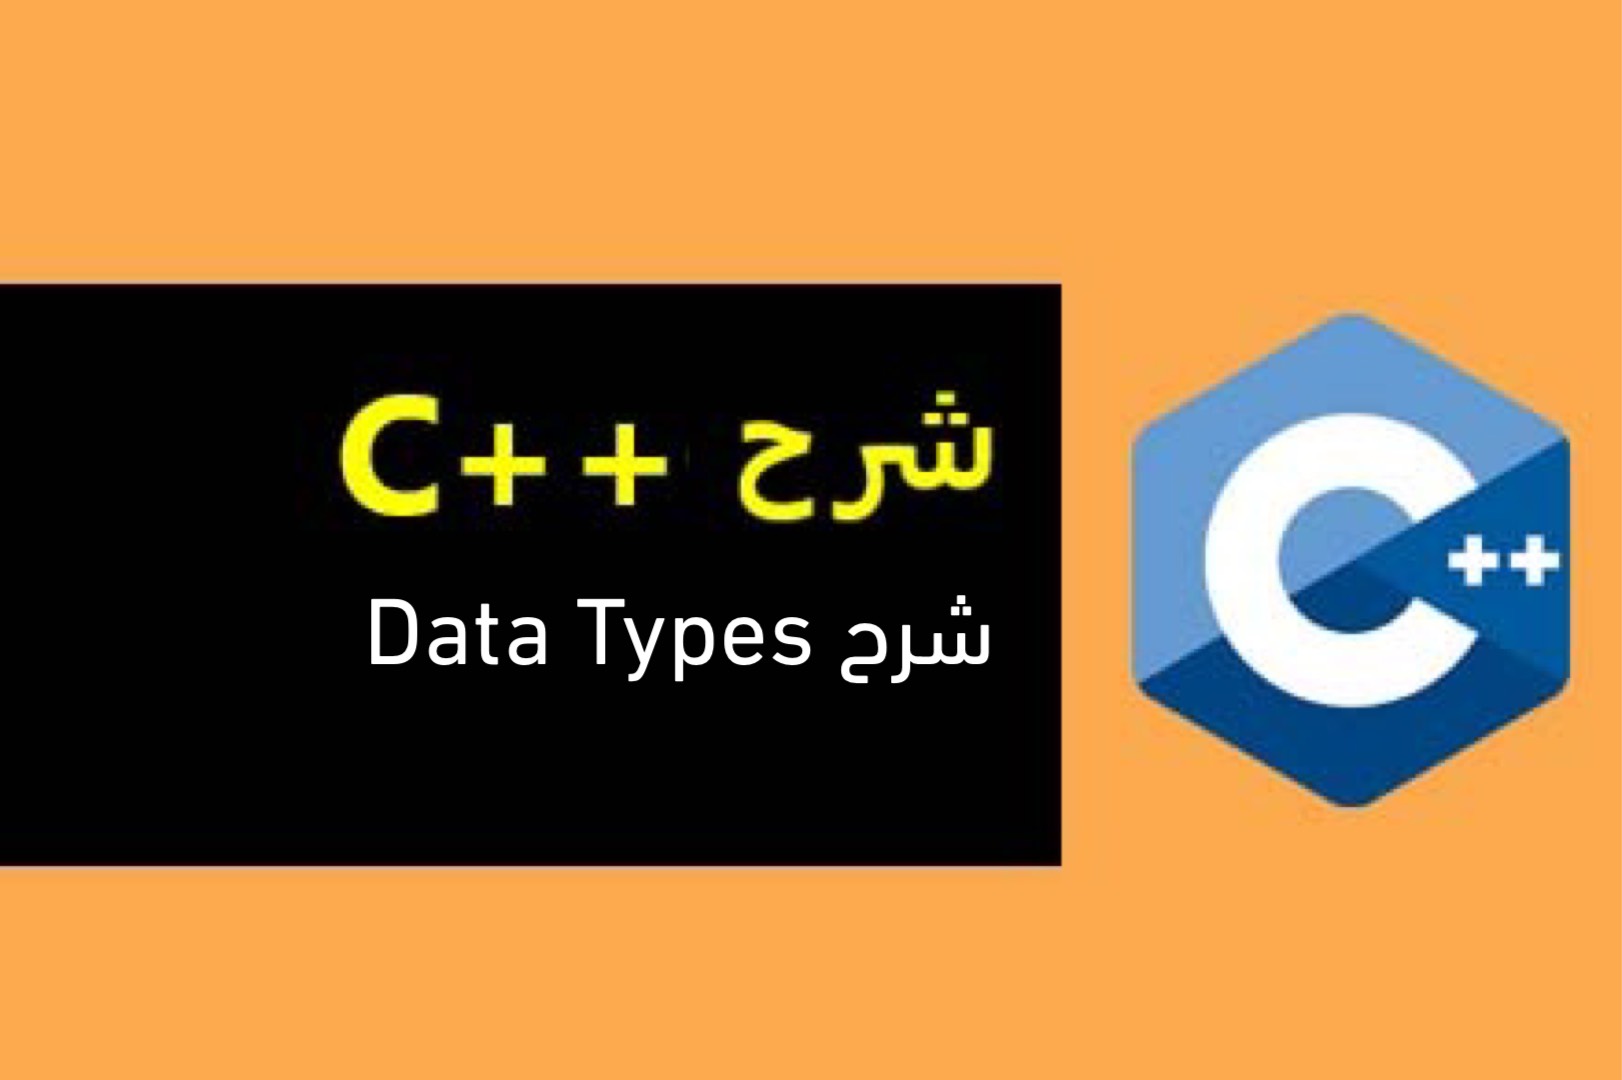 كورس ++C شرح Data Types 日 2021 日